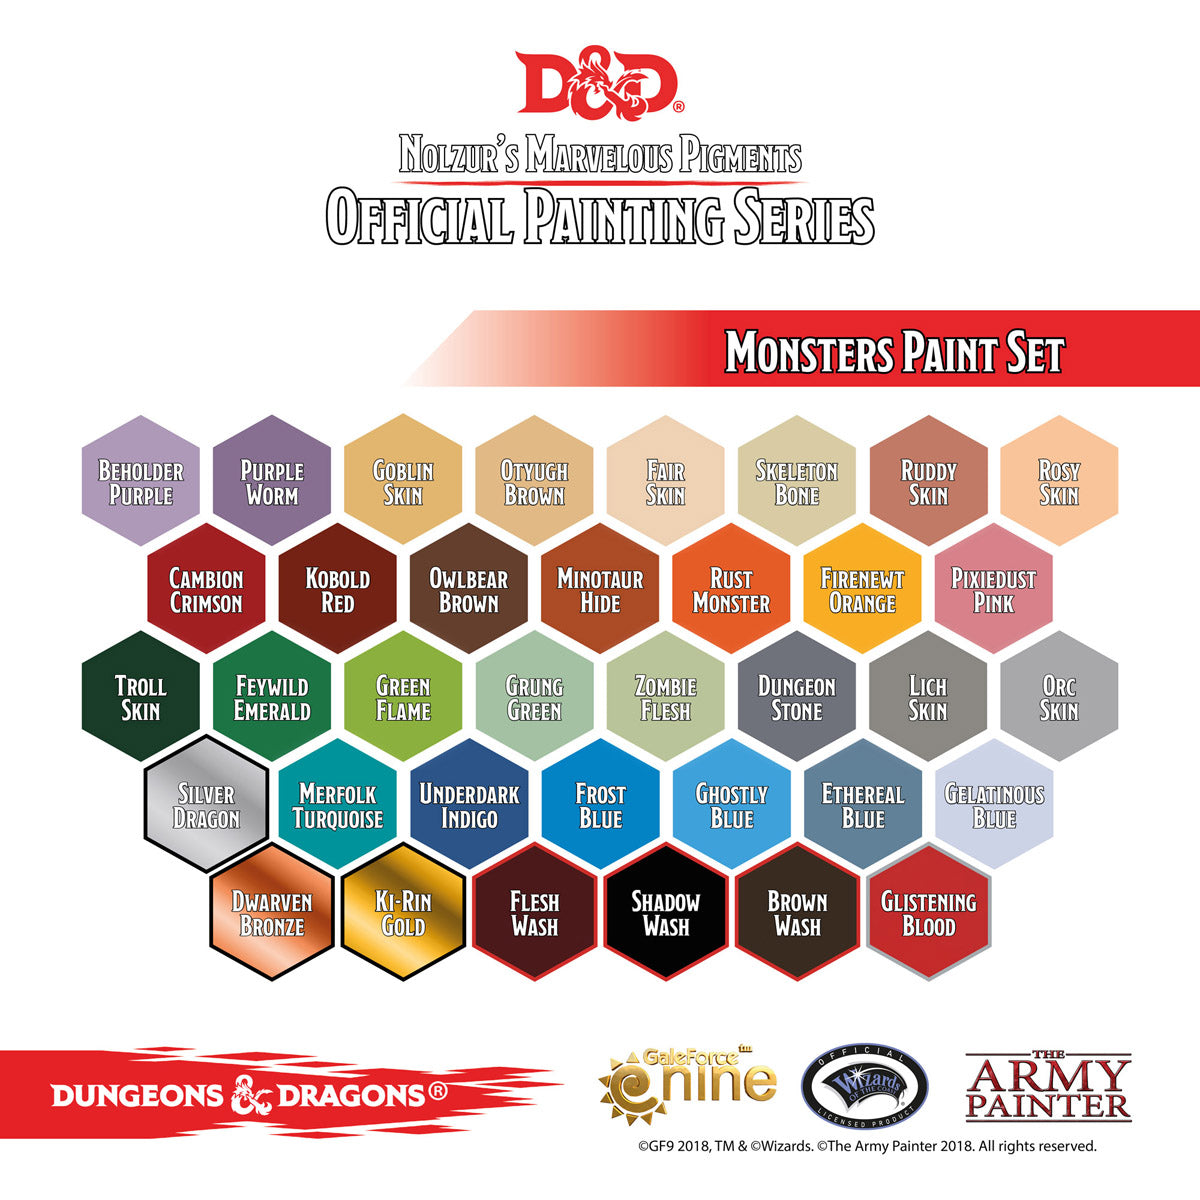 D&D Monsters Paint Set (36 Colors And Exclusive Owlbear Miniature)